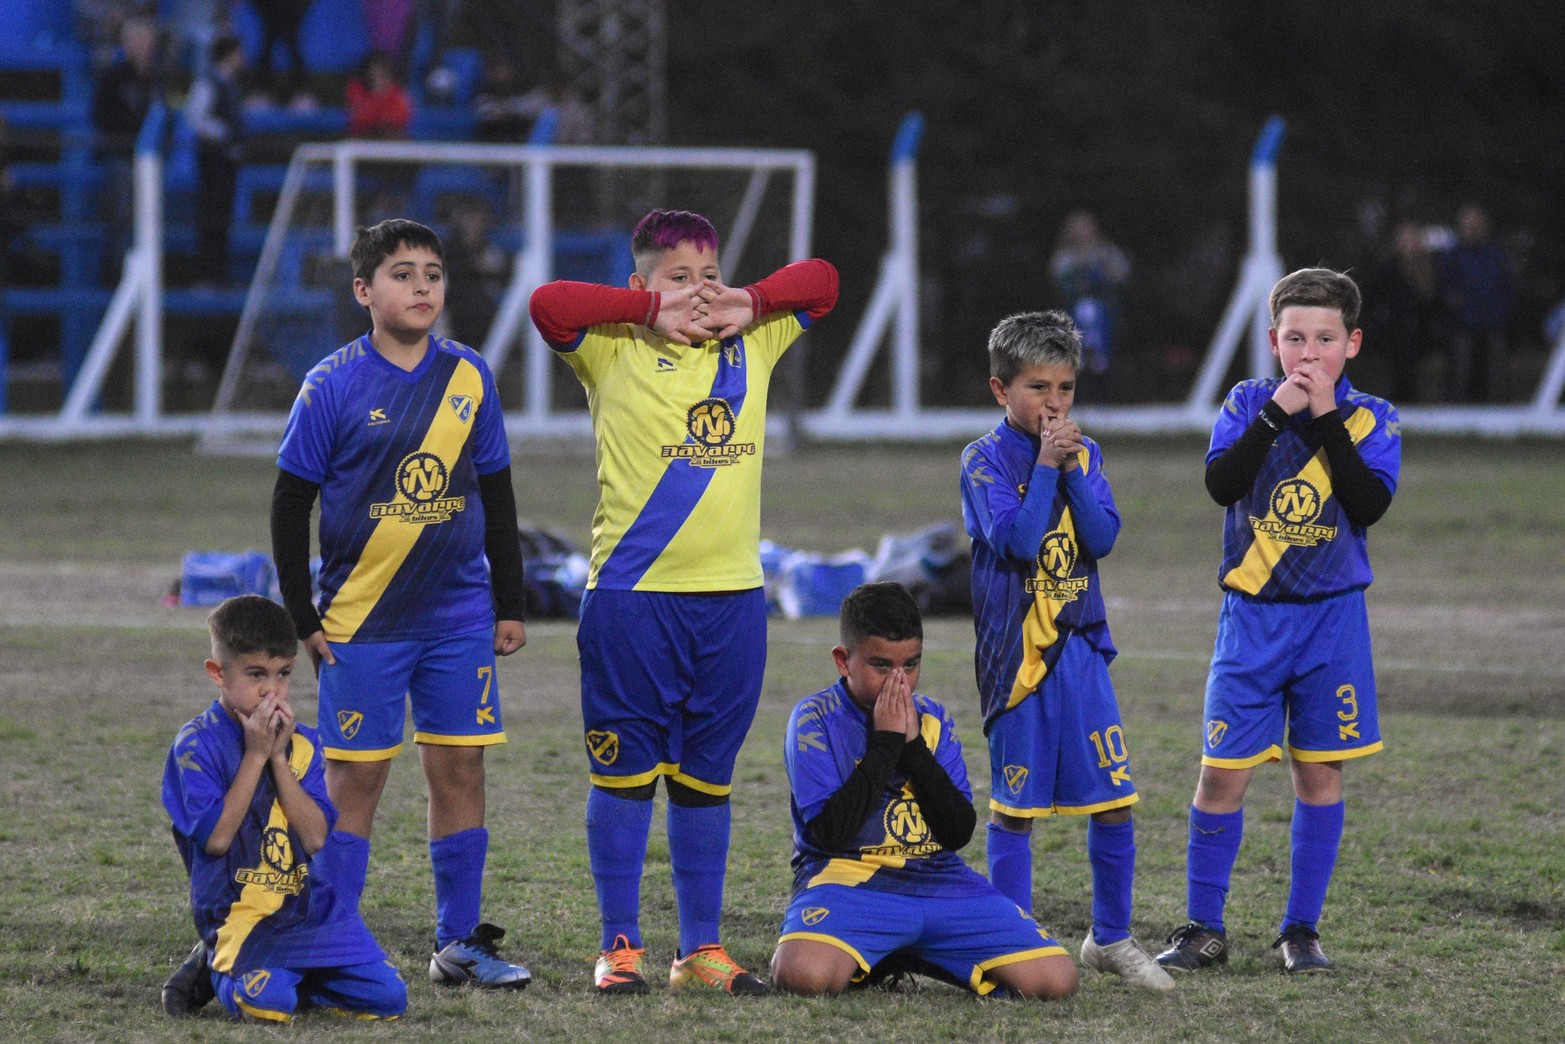 Con la disputa de las finales, llegó a su fin otra edición del torneo de fútbol infantil organizado por Ciclón Racing.